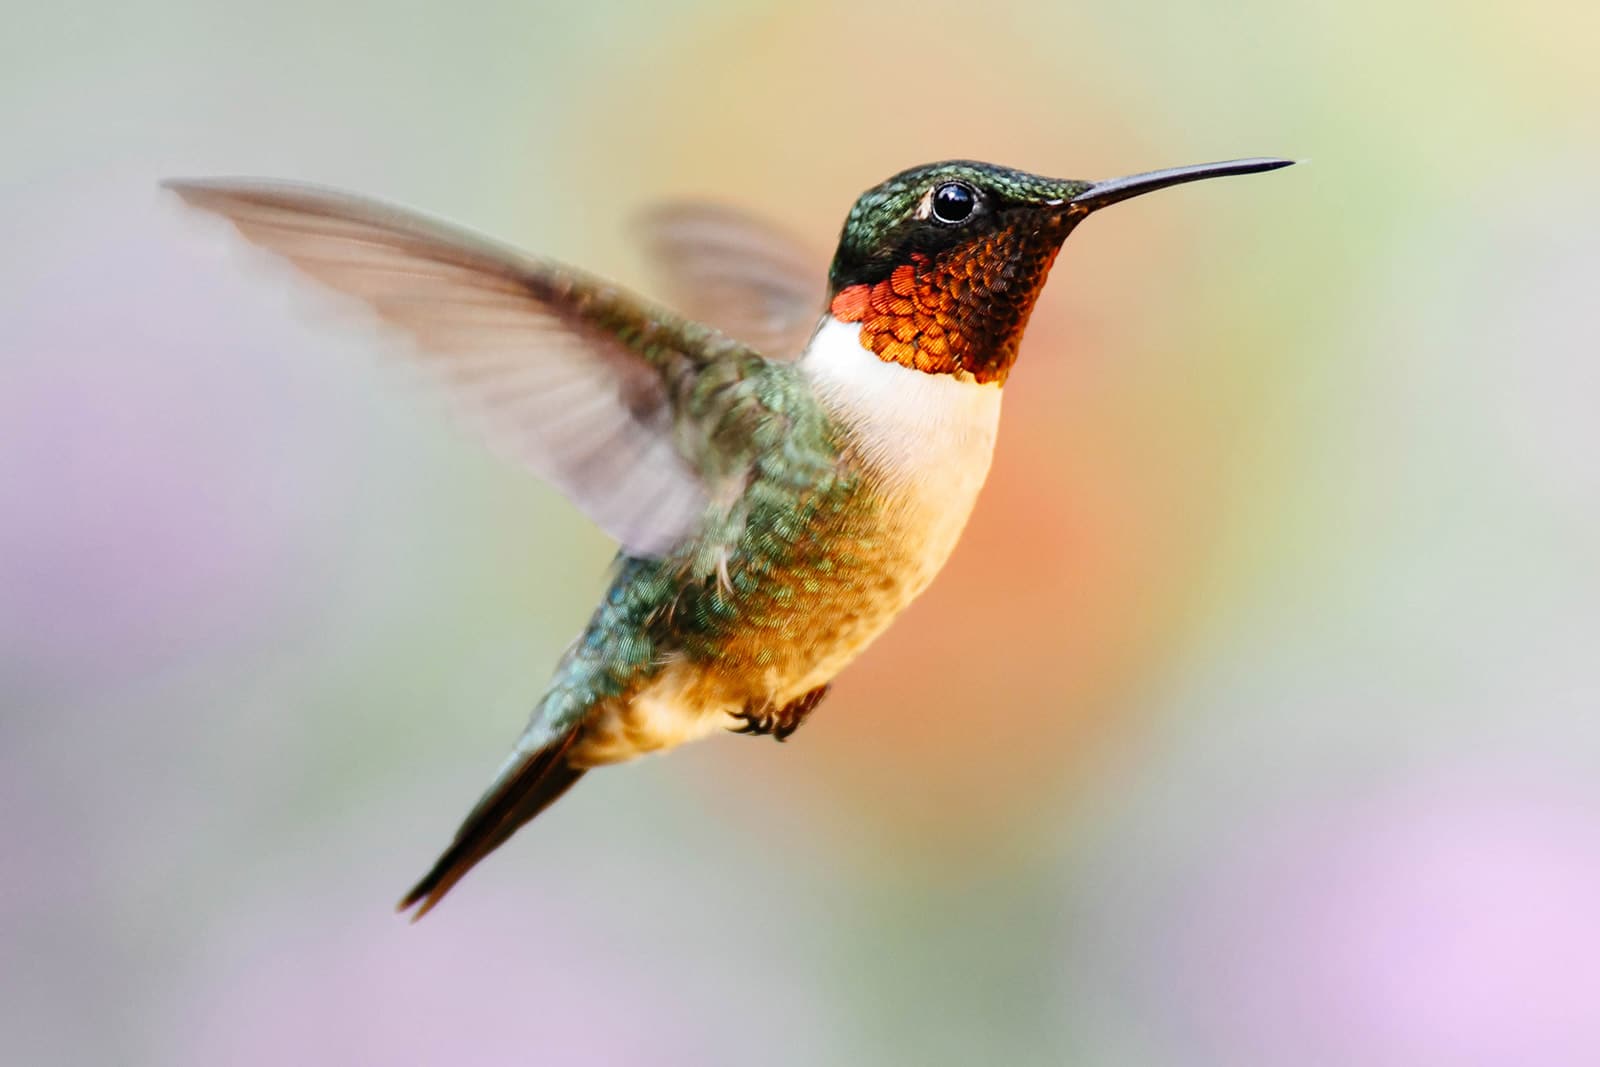 Close-up of hummingbird in mid-flight